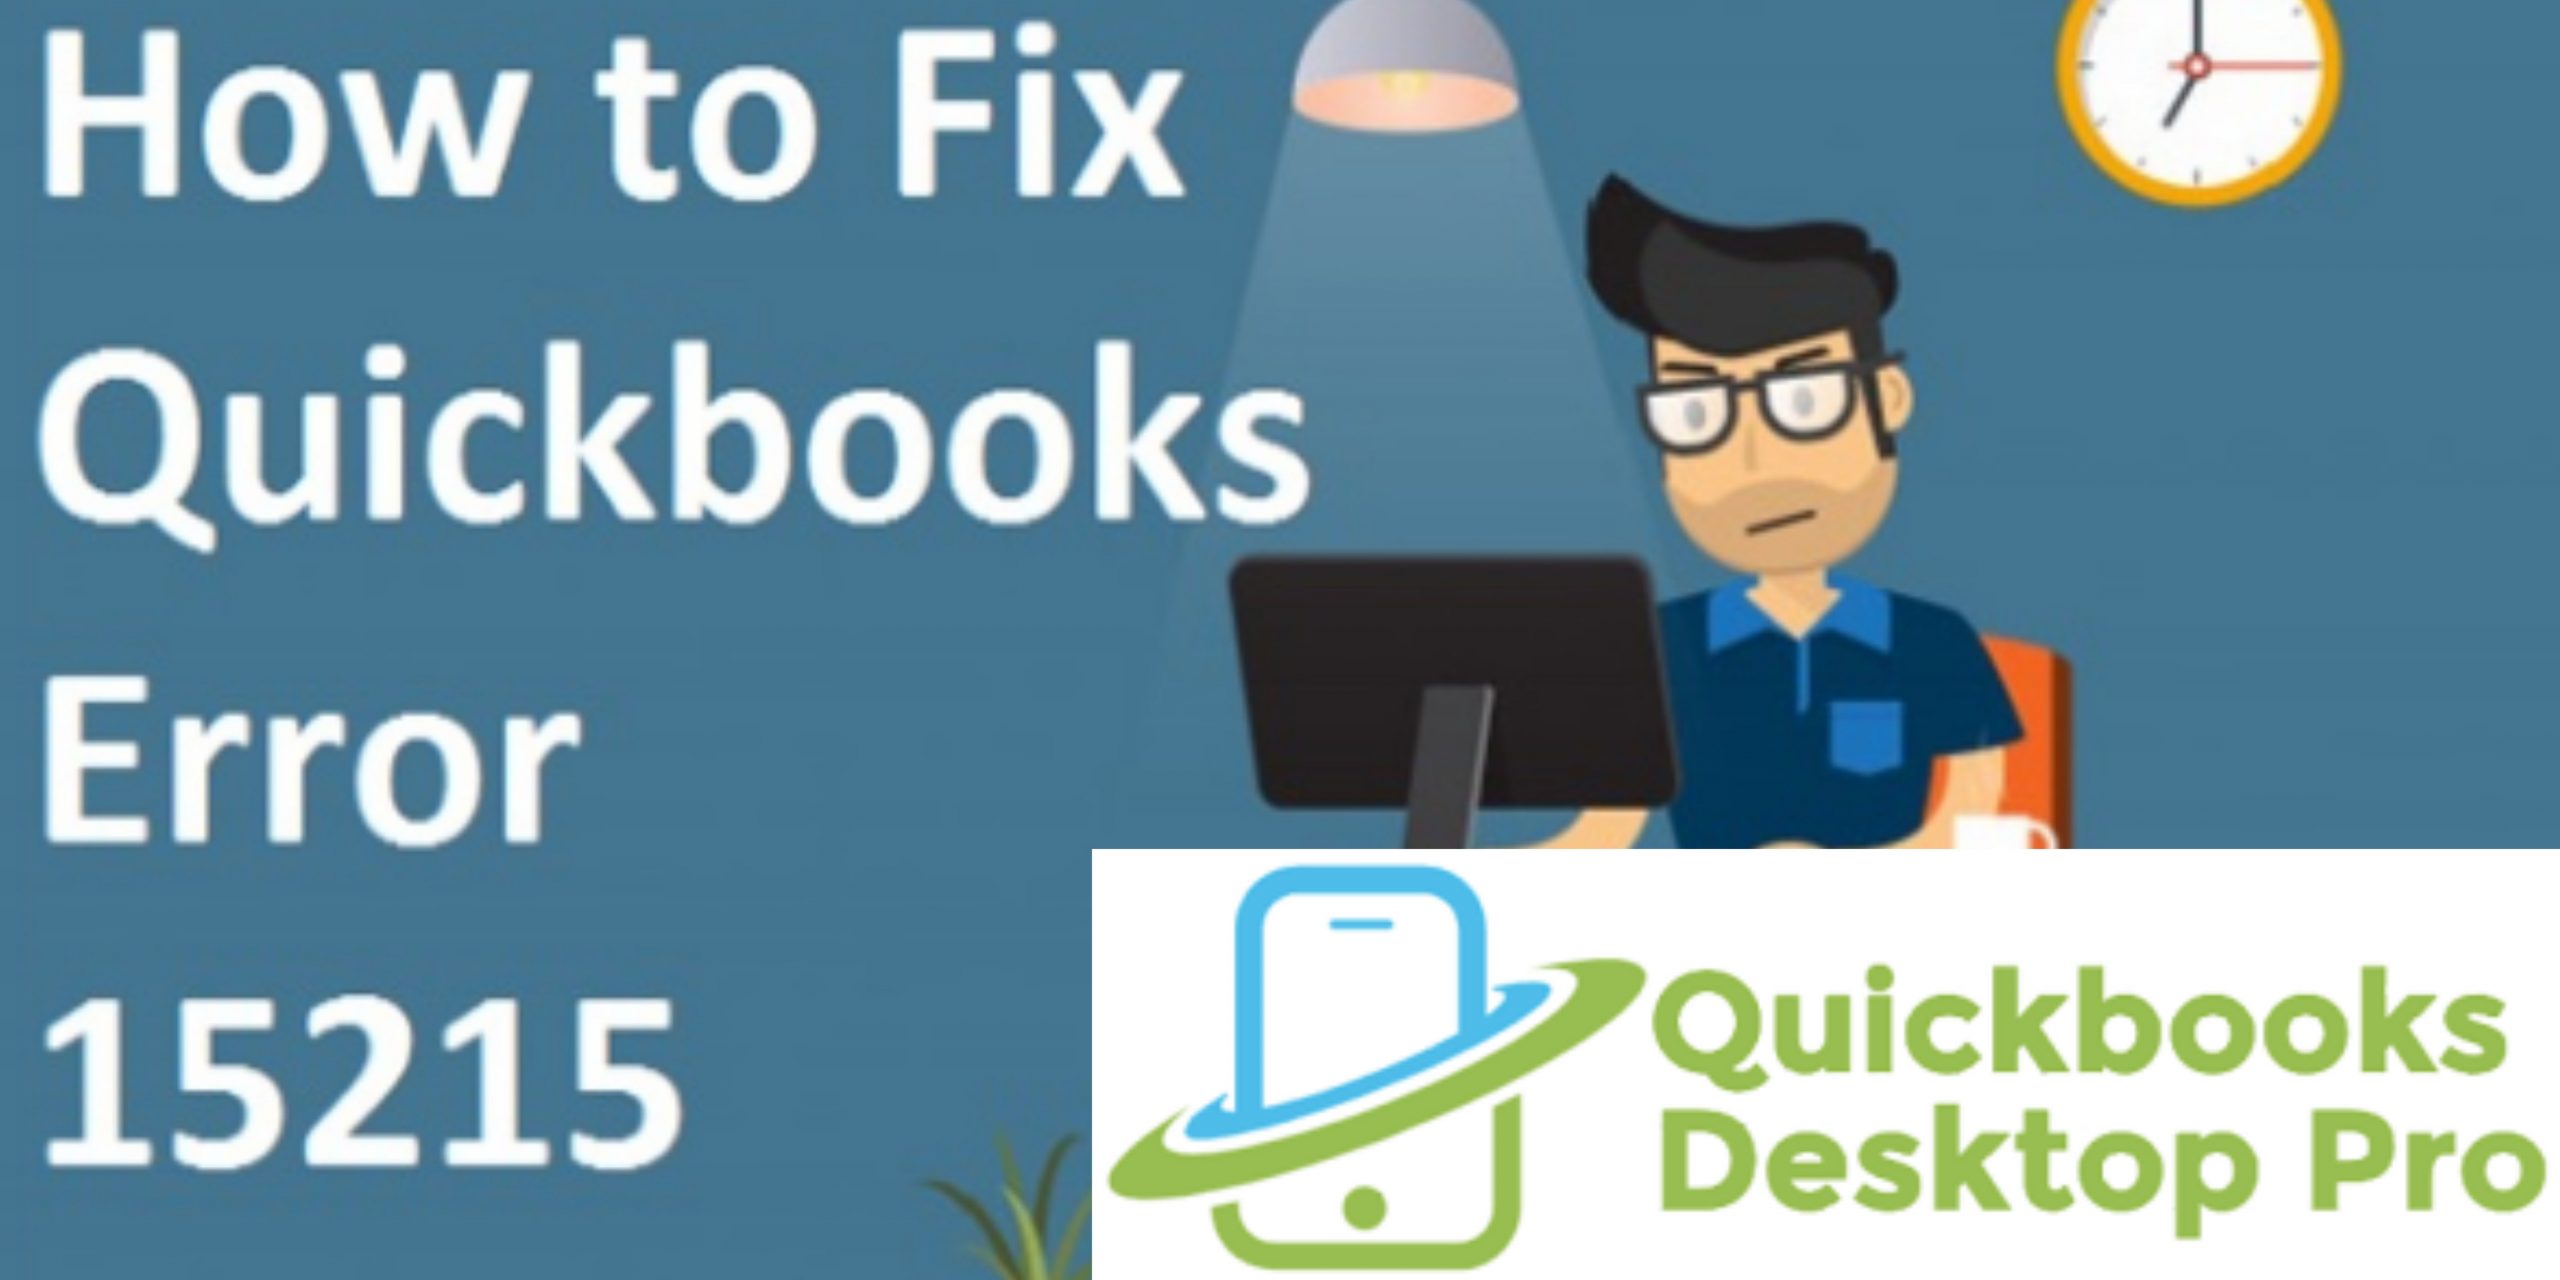 fix quickbooks error 15215